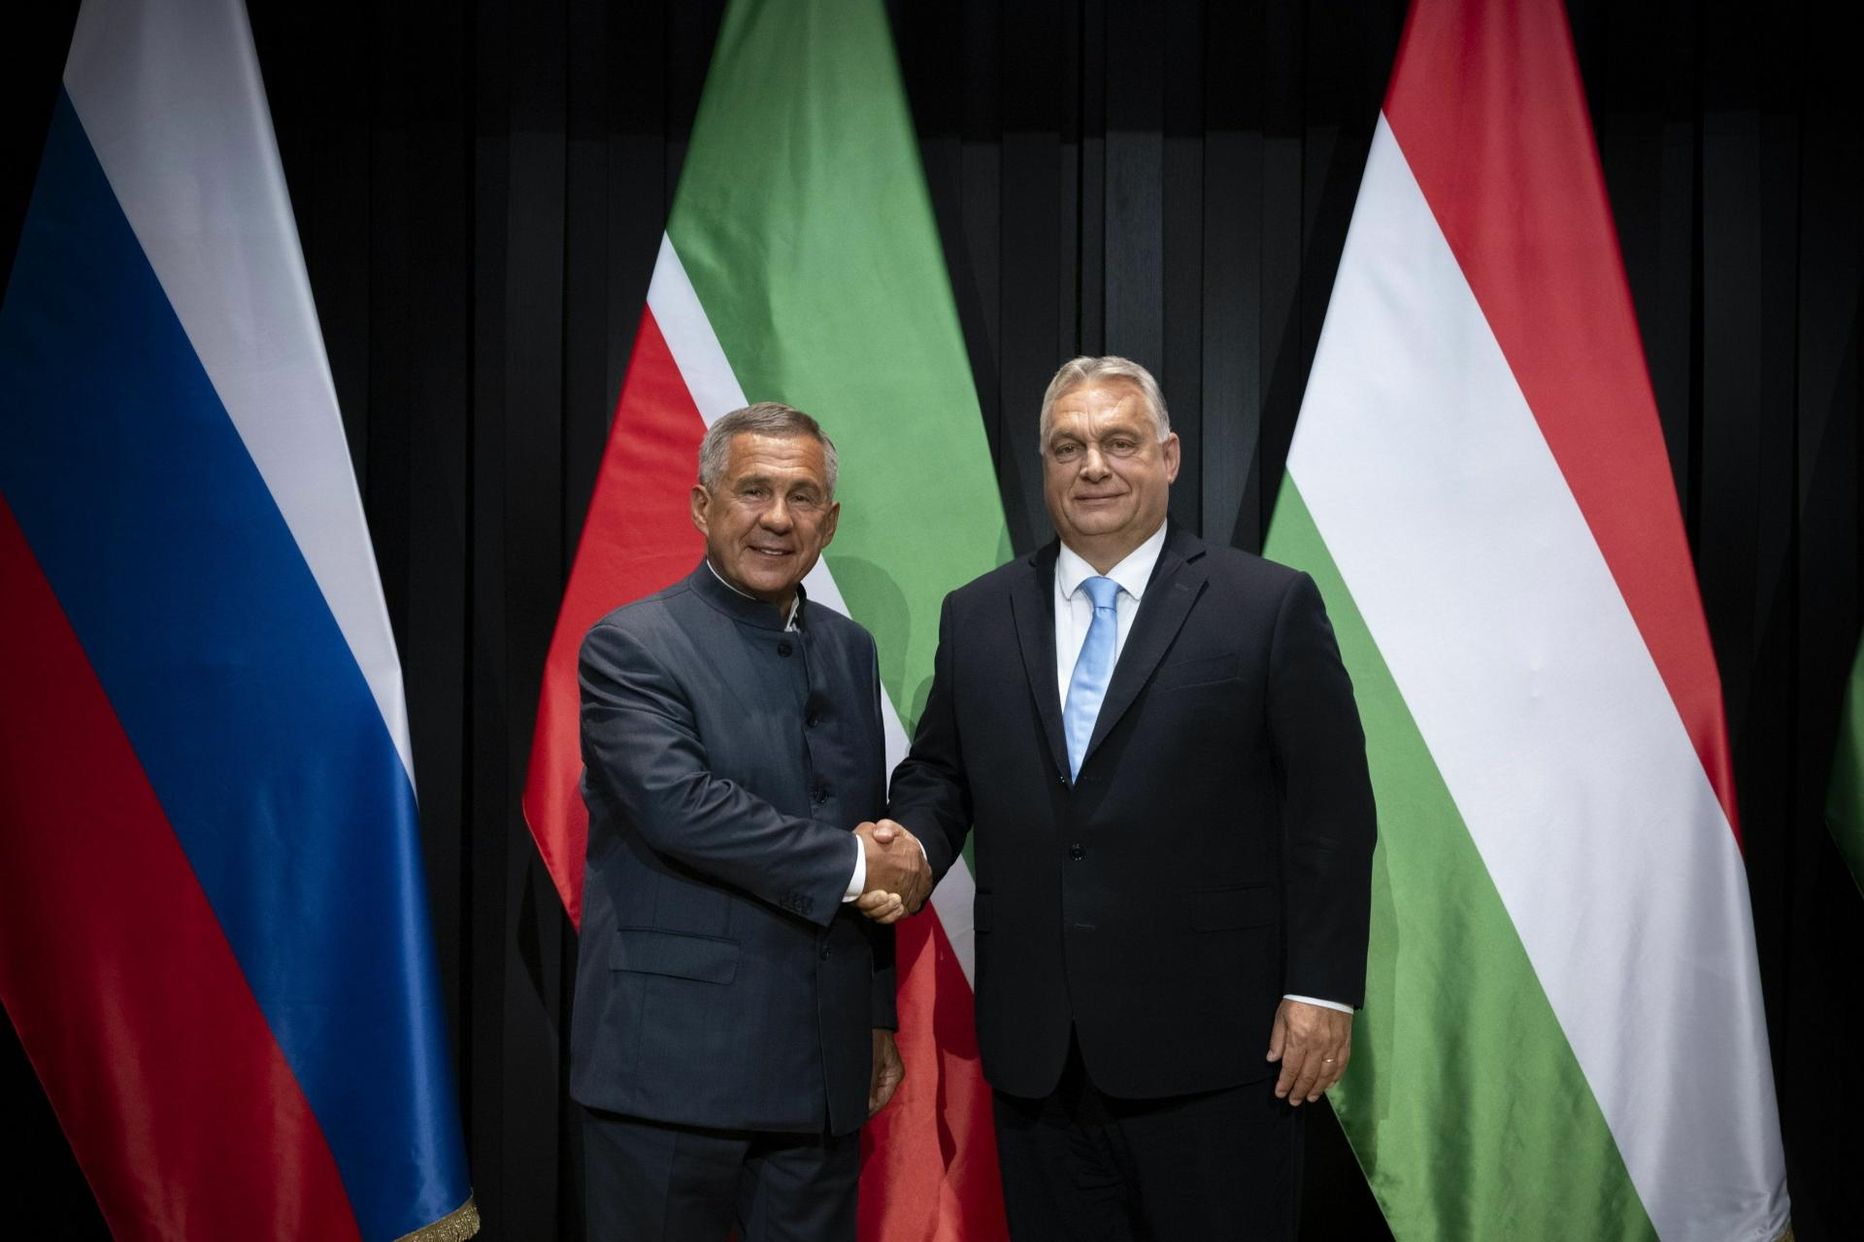 Augustis sõitis Tatarstani rais Röstäm Miñnexan (paremal) Venemaa Föderatsiooni esindajana Ungarisse, kus võttis osa Püha Istvani päeva tähistamisest ja kohtus Ungari peaministri Viktor Orbániga.